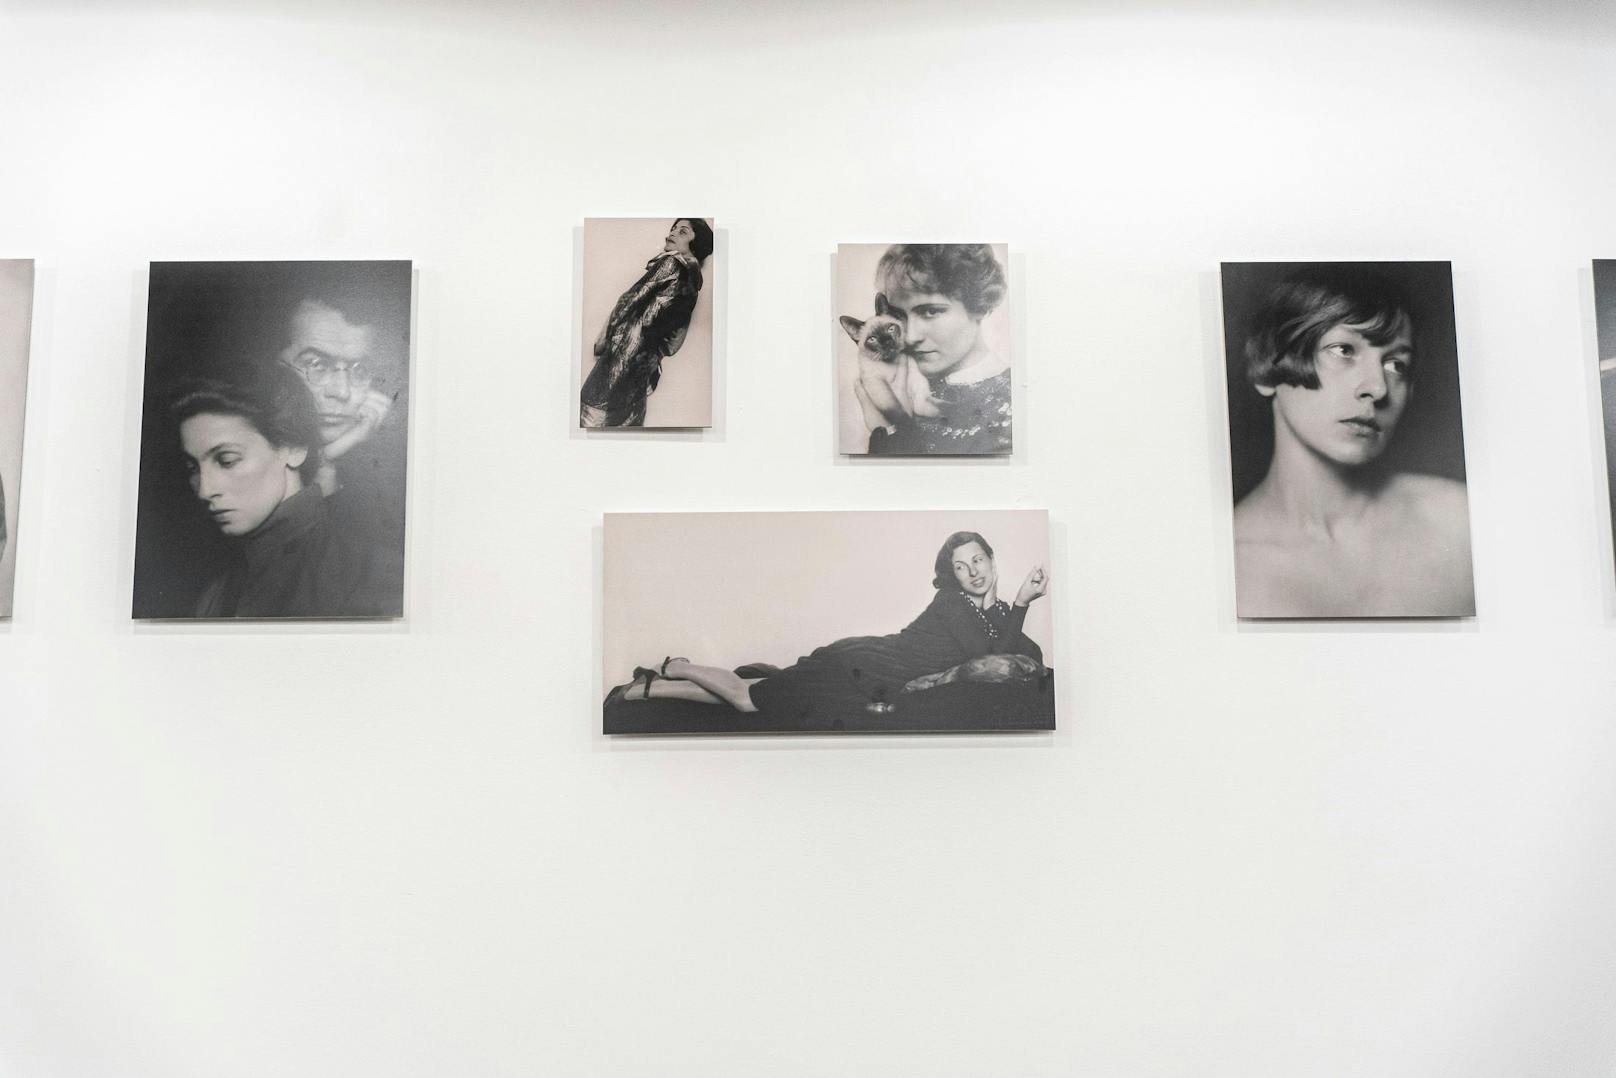 Fotografien der namensgebenden Fotografin Trude Fleischmann sind im Lokal ausgestellt